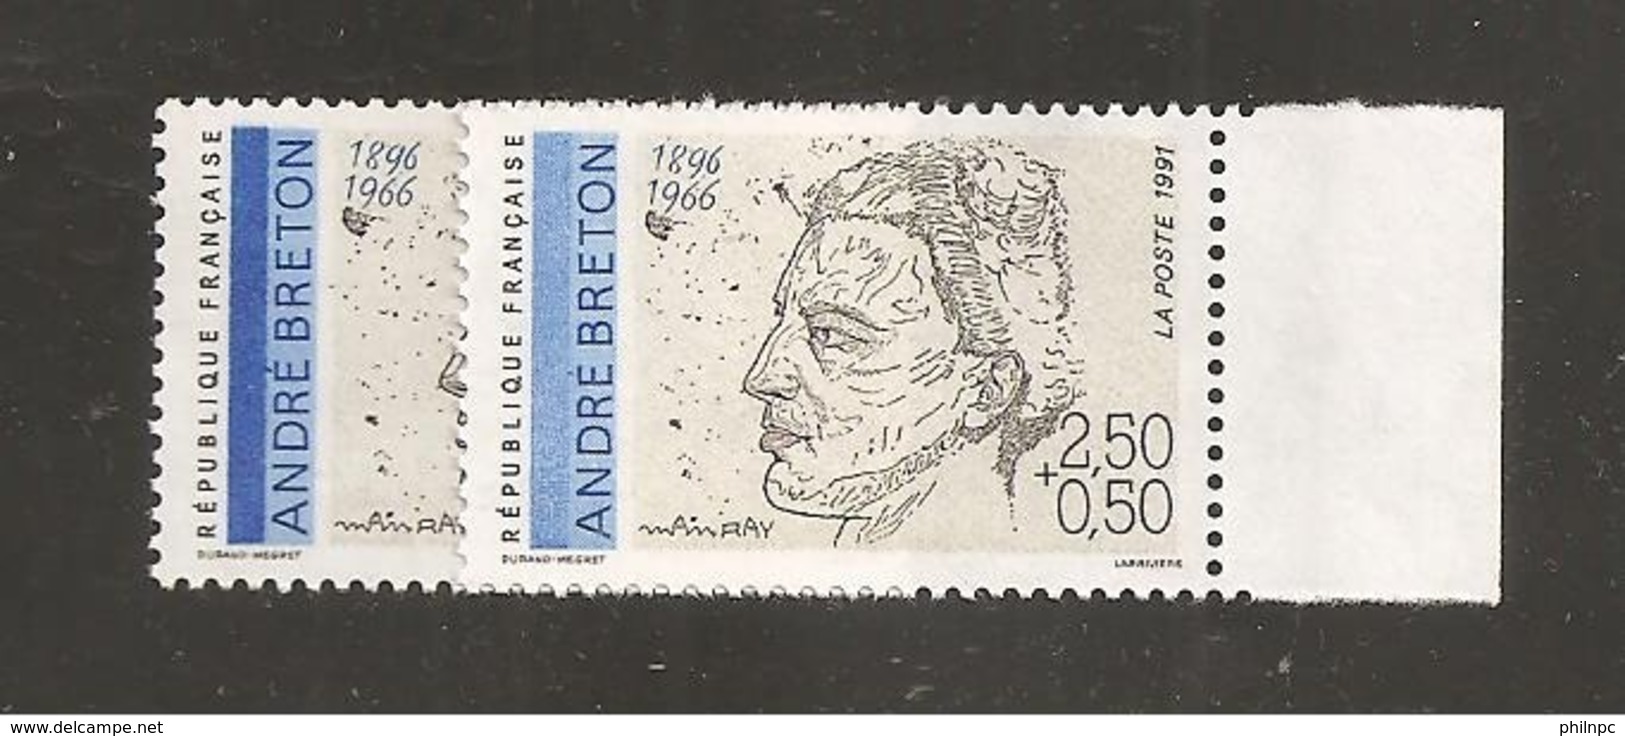 France, 2682a, 2682, Variété : Bleu Foncé ABSENT, Neuf **, TTB, André Breton, Poète - Unused Stamps